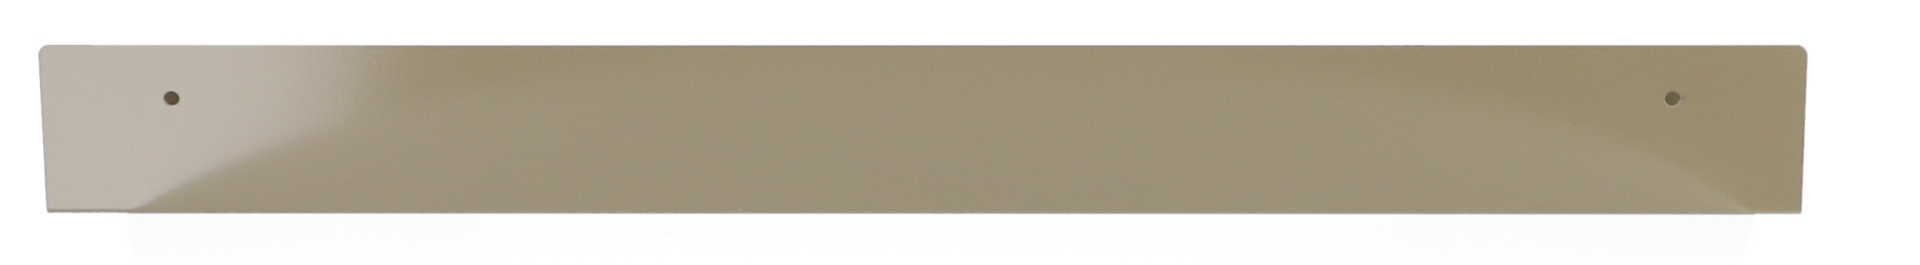 Das Wandregal Jill wurde aus Metall gefertigt und hat einen olivegrauen Farbton. Die Breite beträgt 80 cm. Das Design ist schlicht aber auch modern. Das Regal ist ein Produkt der Marke Jan Kurtz.